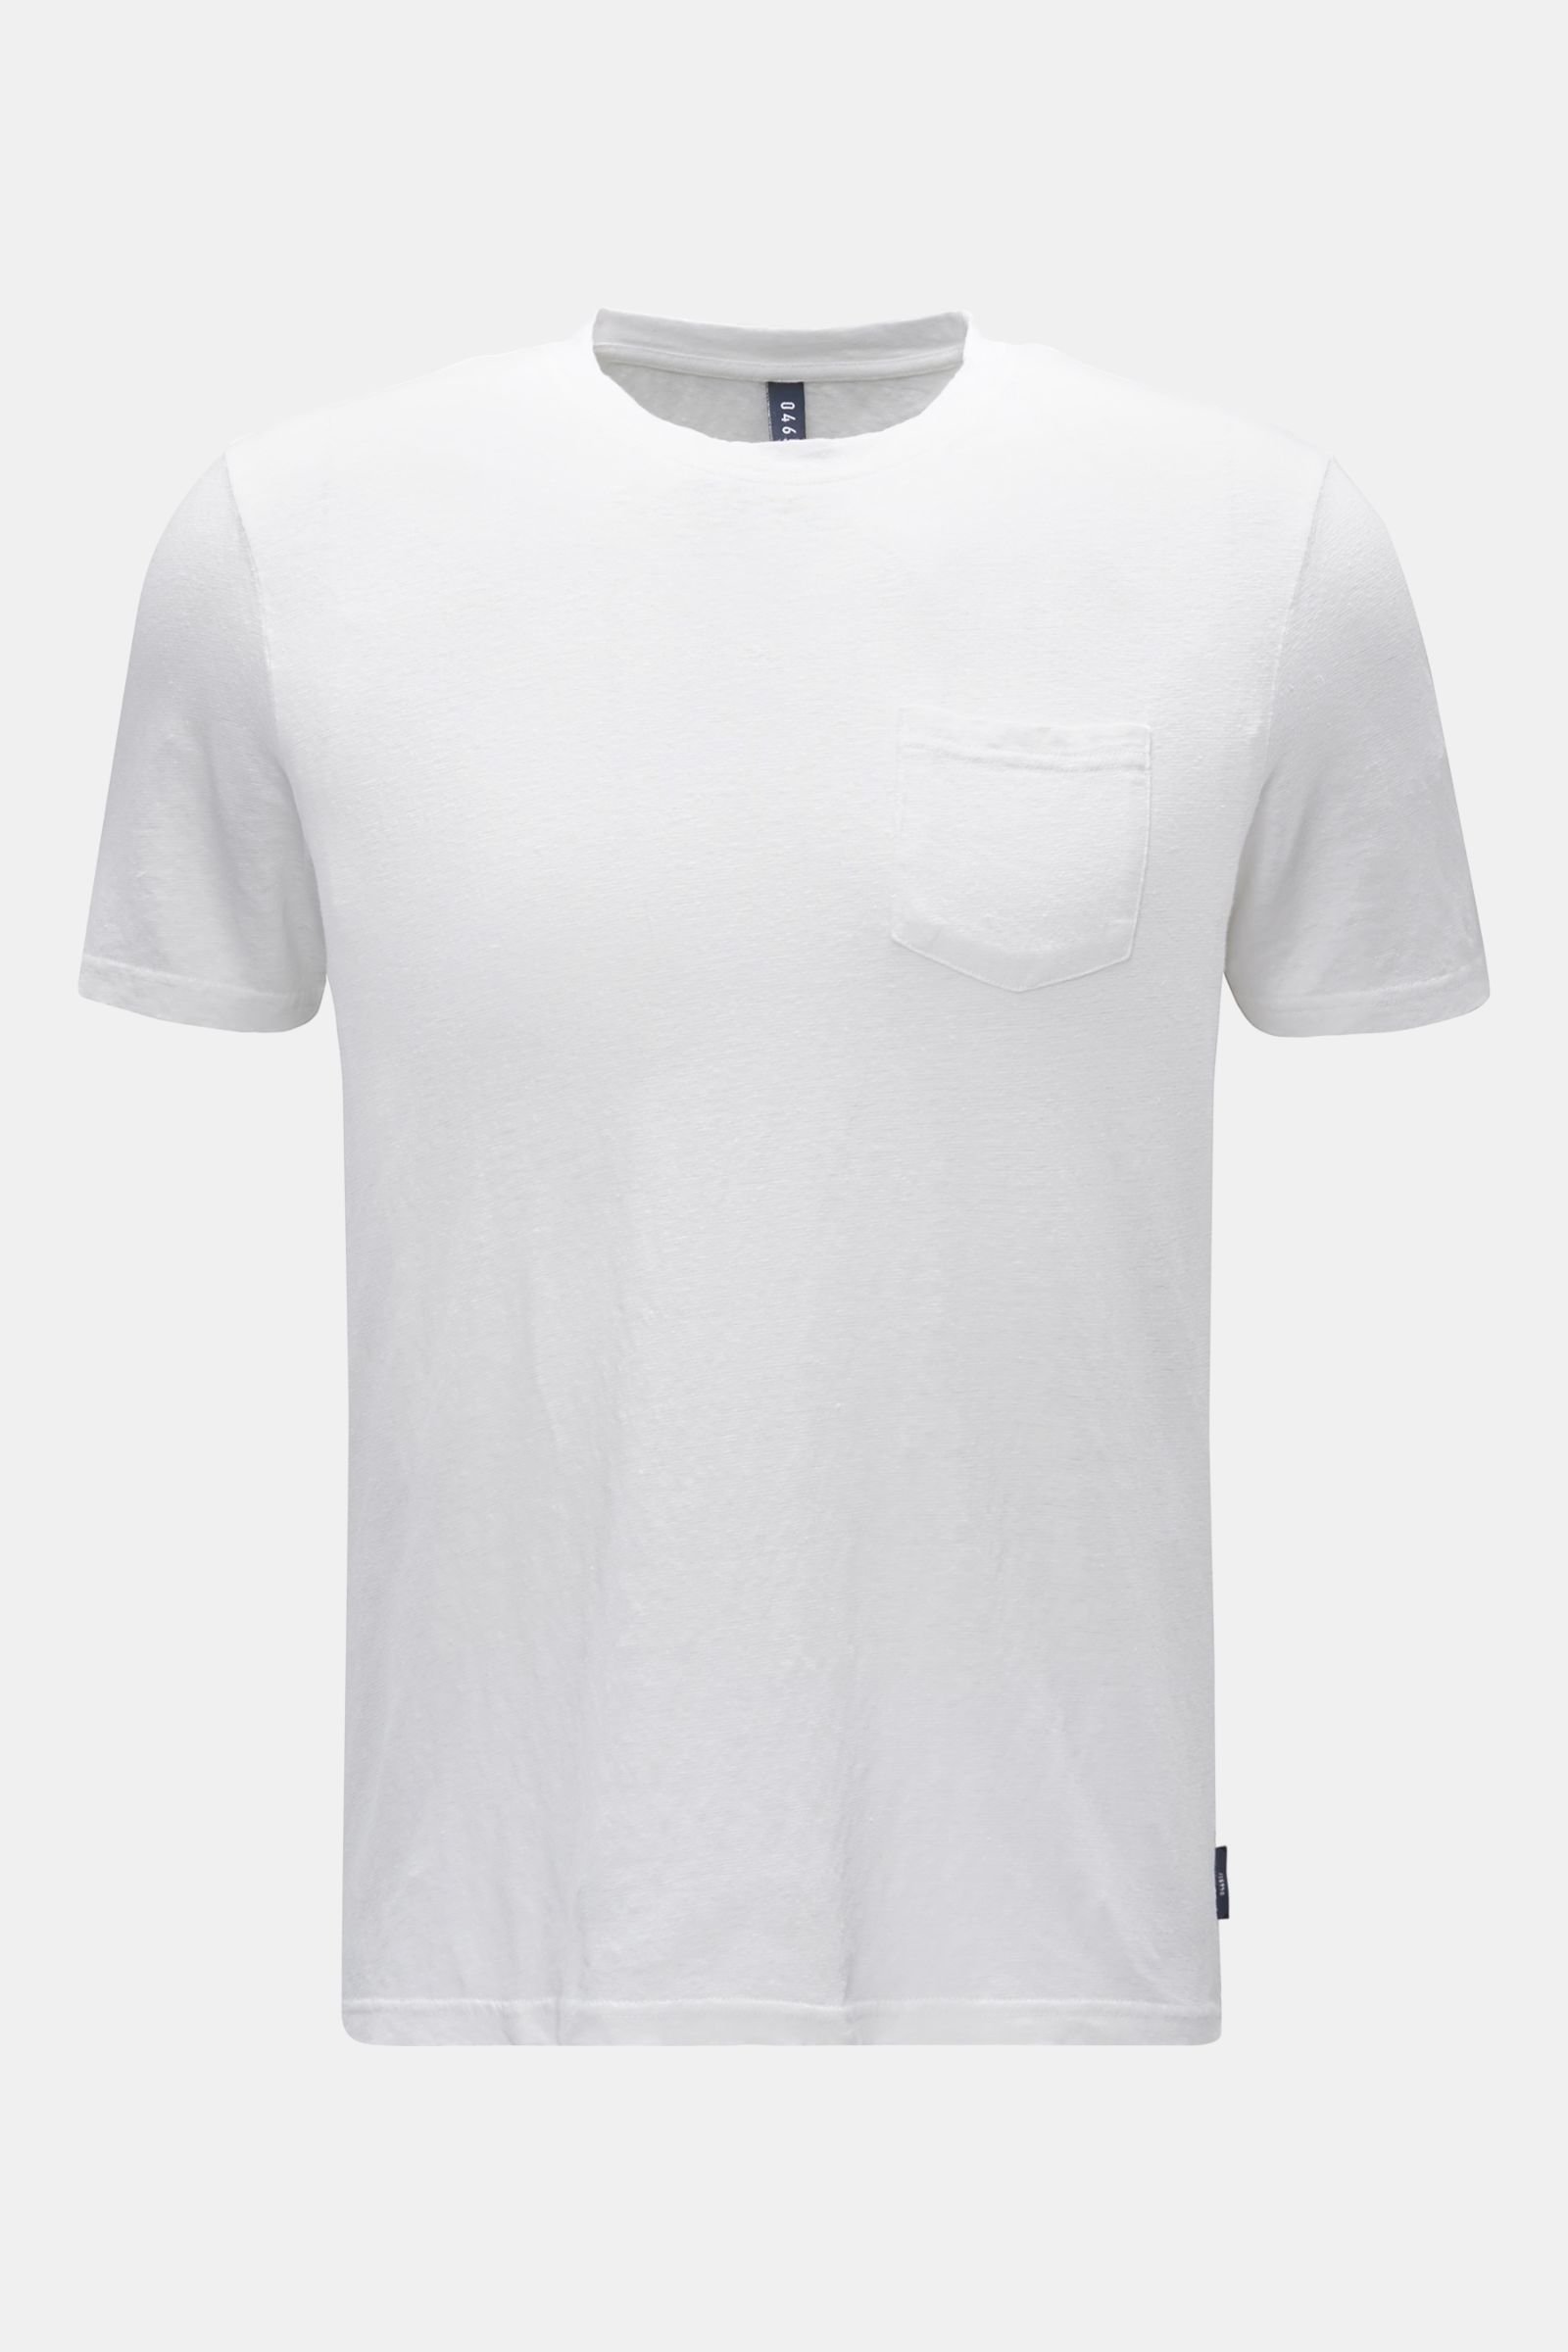 Leinen Rundhals-T-Shirt weiß